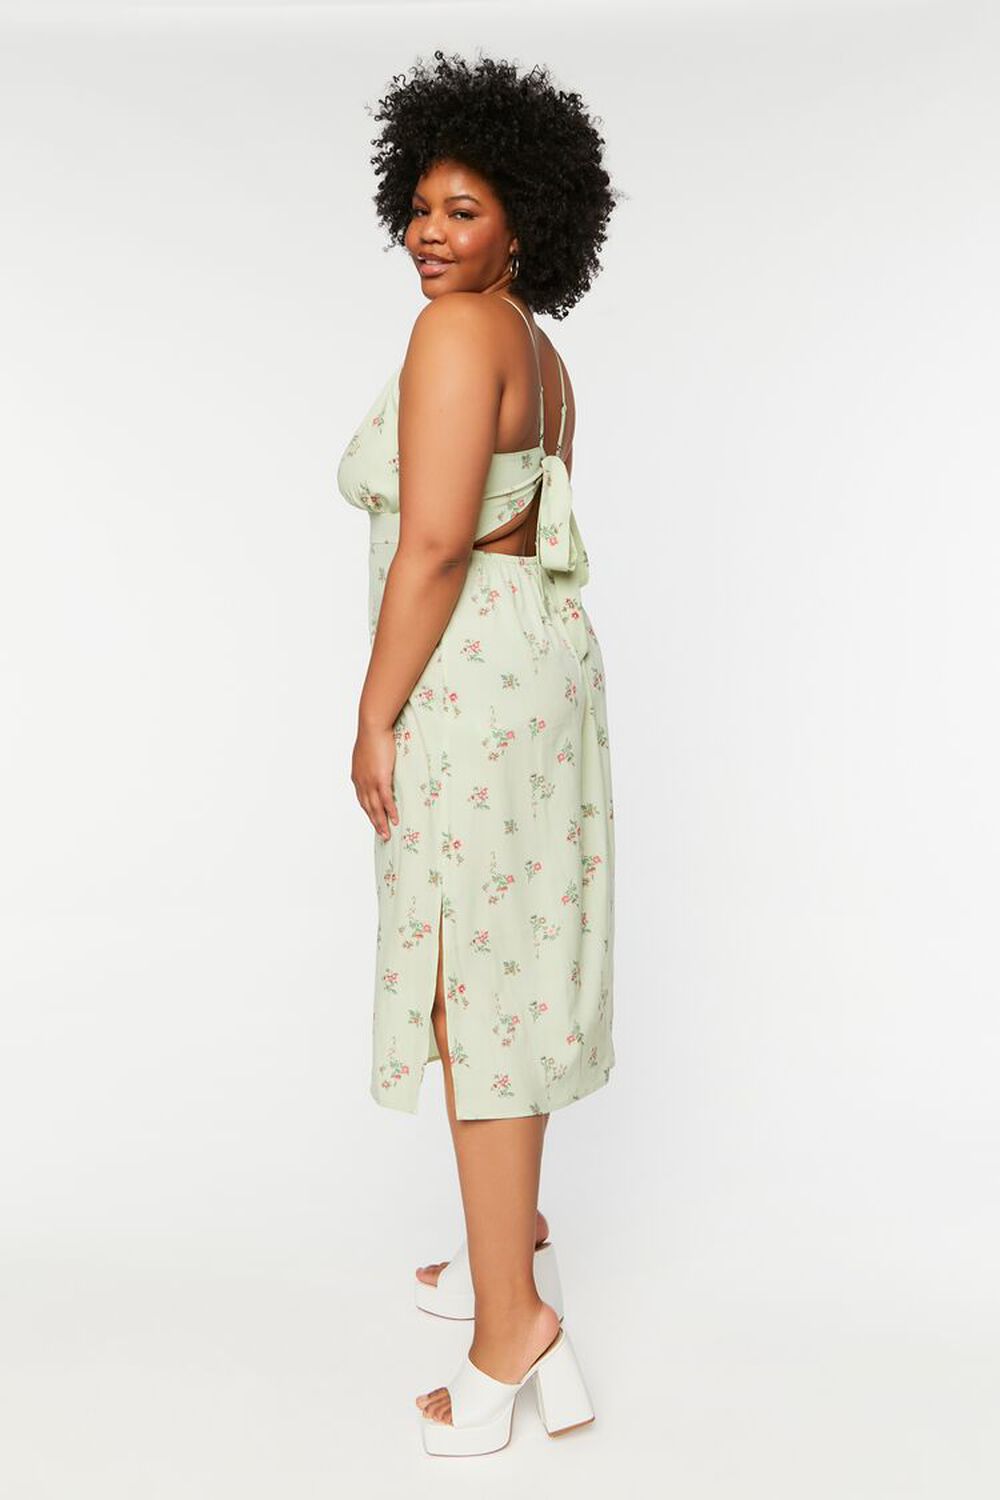 PISTACHIO/MULTI Plus Size Floral Cami Dress, image 2